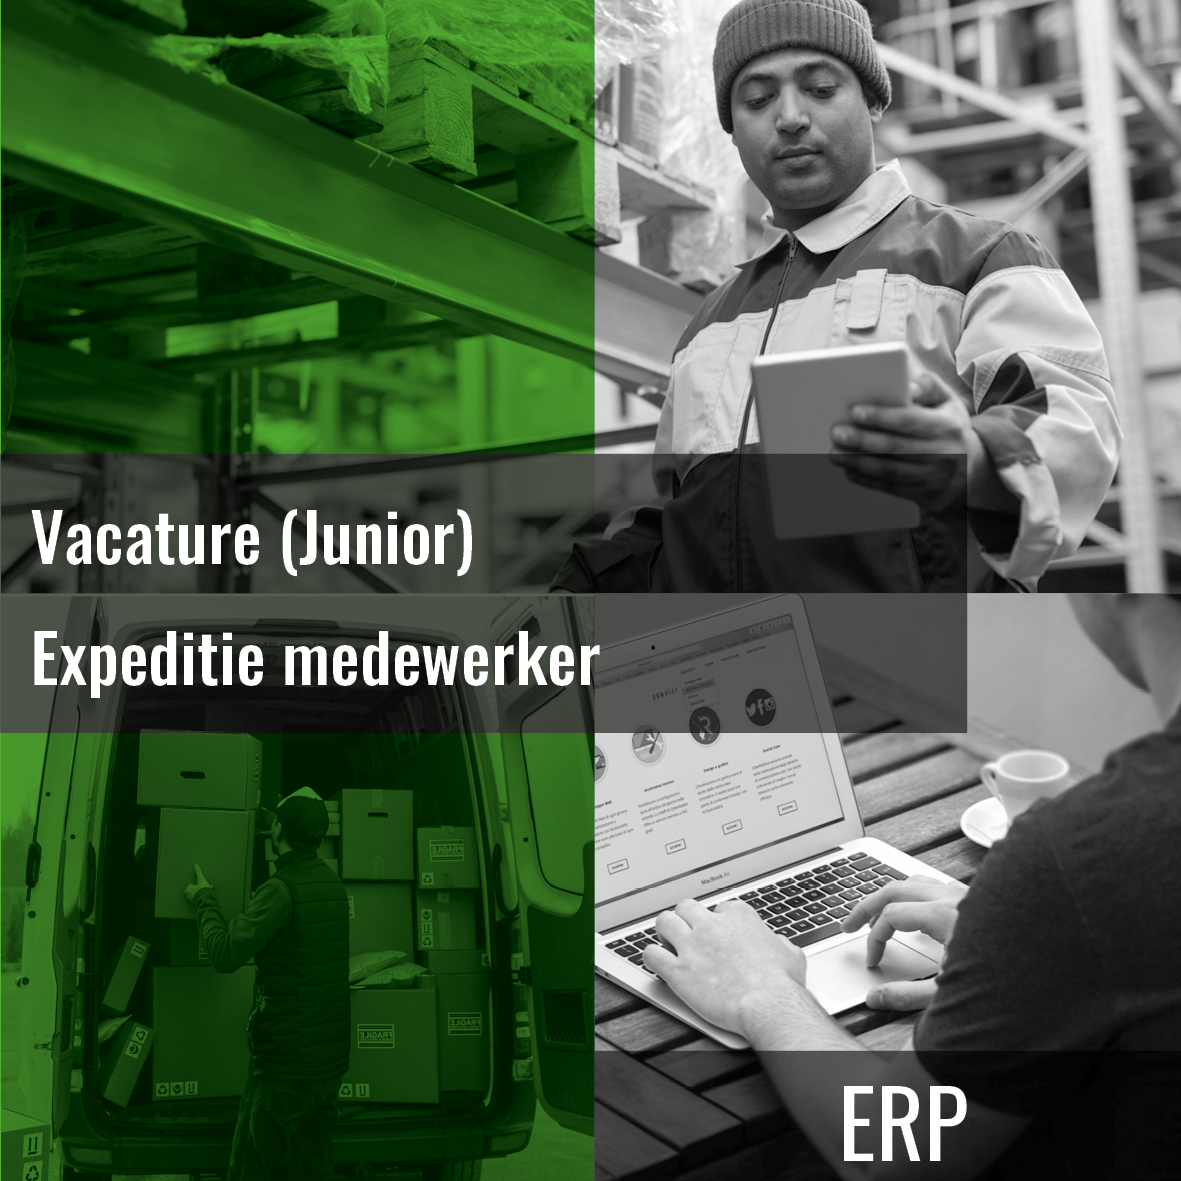 Vacature (Junior) Expeditie medewerker - Erp